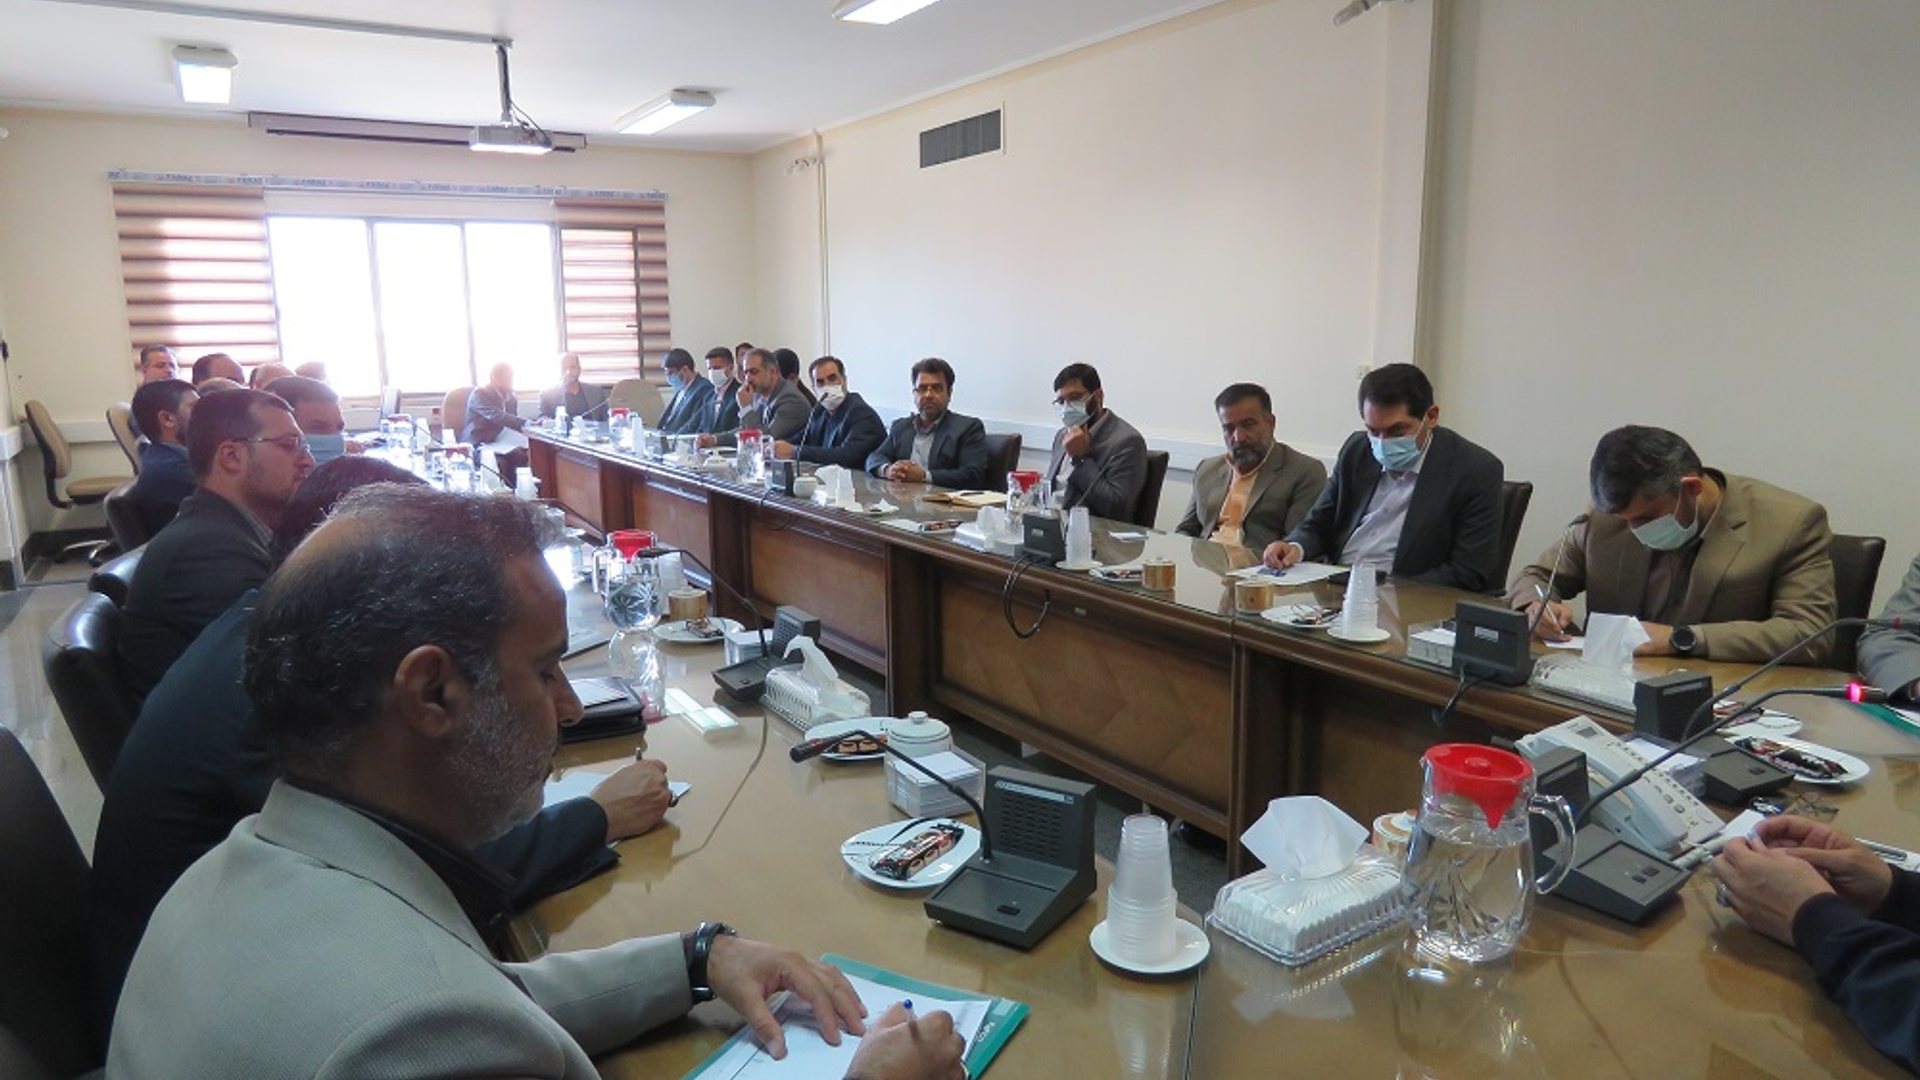 جلسه کمیسیون دانشجویی استان در روز پنجشنبه مورخ 07-07-1401 به ریاست نظری معاون سیاسی ، امنیتی و اجتماعی و با حضور آذری مدیرکل سیاسی ، انتخابات و تقسیمات کشوری برگزار گردید.